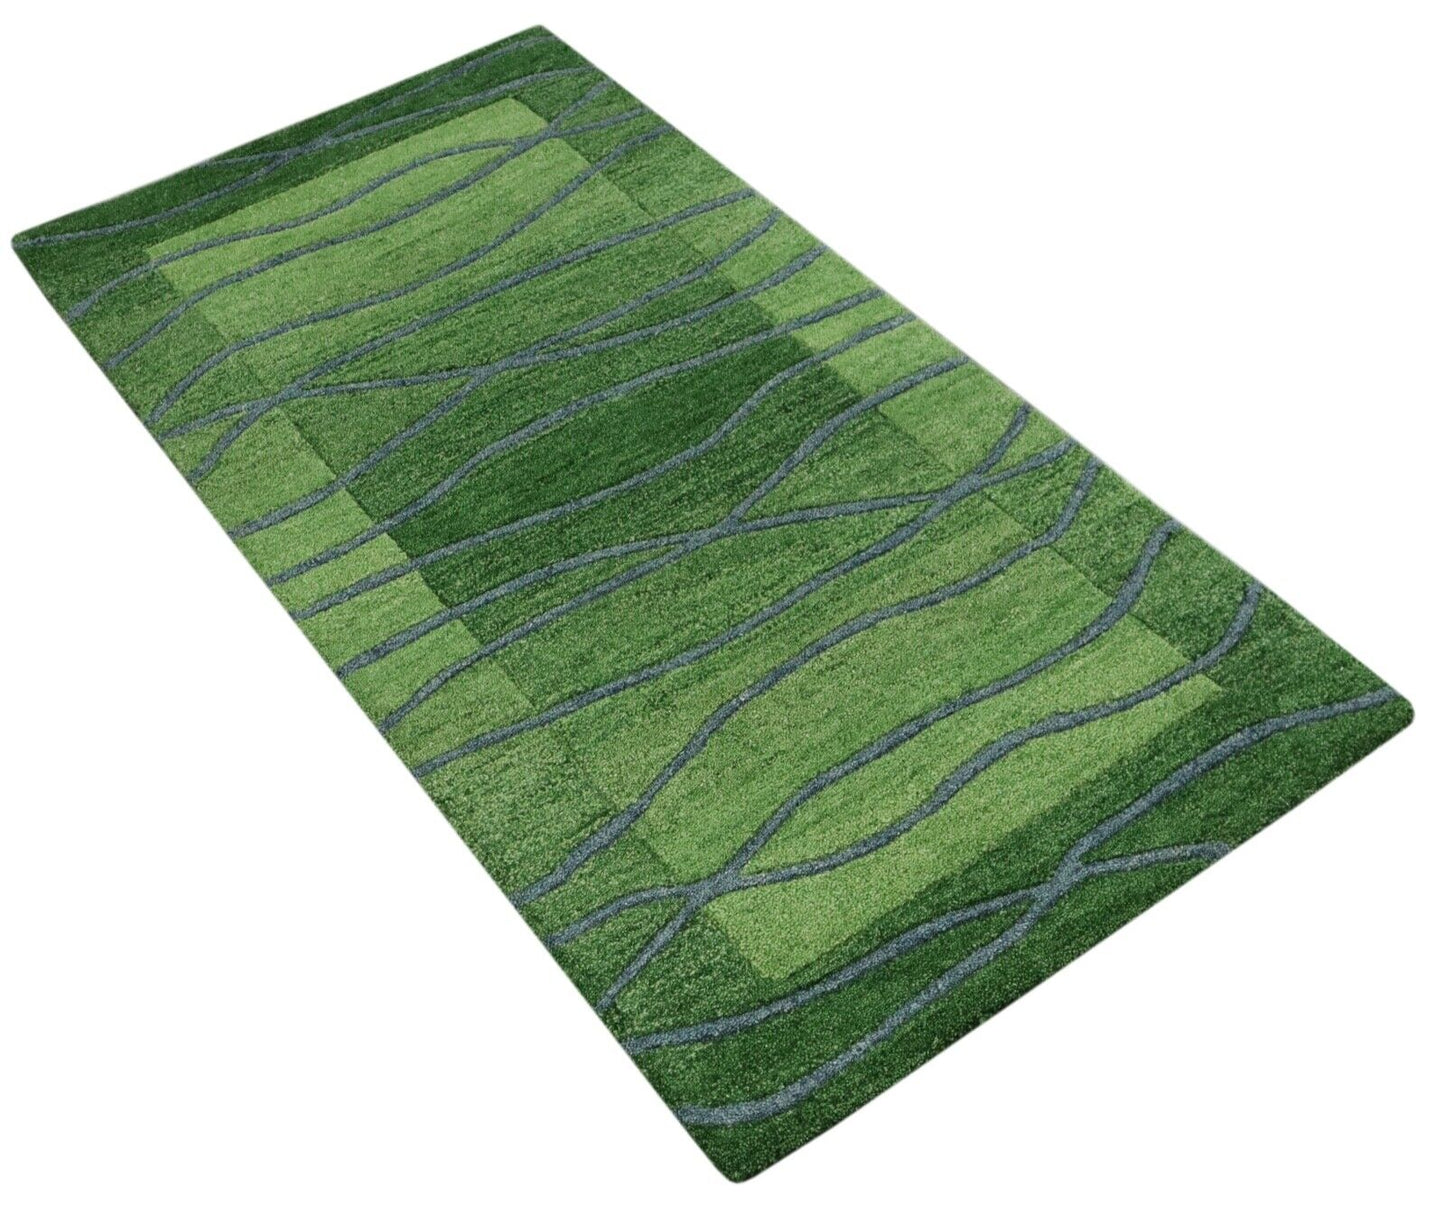 Gabbeh Teppich 100% Wolle 70X140 cm Handarbeit Grün Handgetuftet T1018